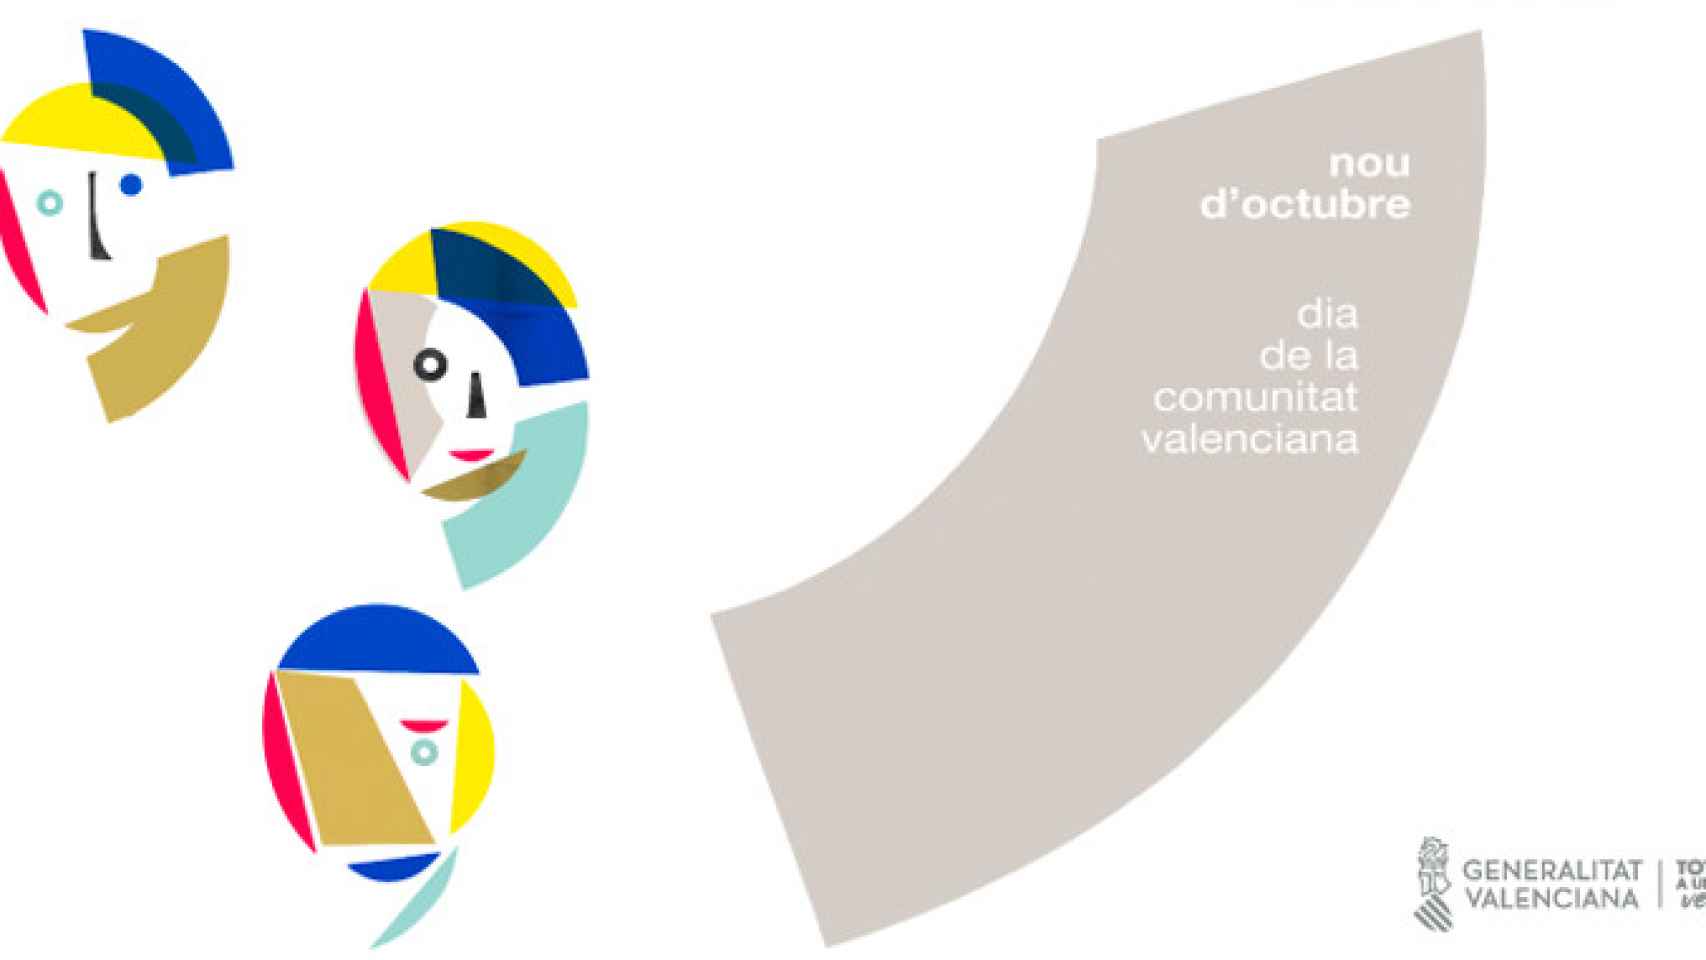 Imagen promocional del Día de la Comunidad Valenciana, 9 de octubre / GVA